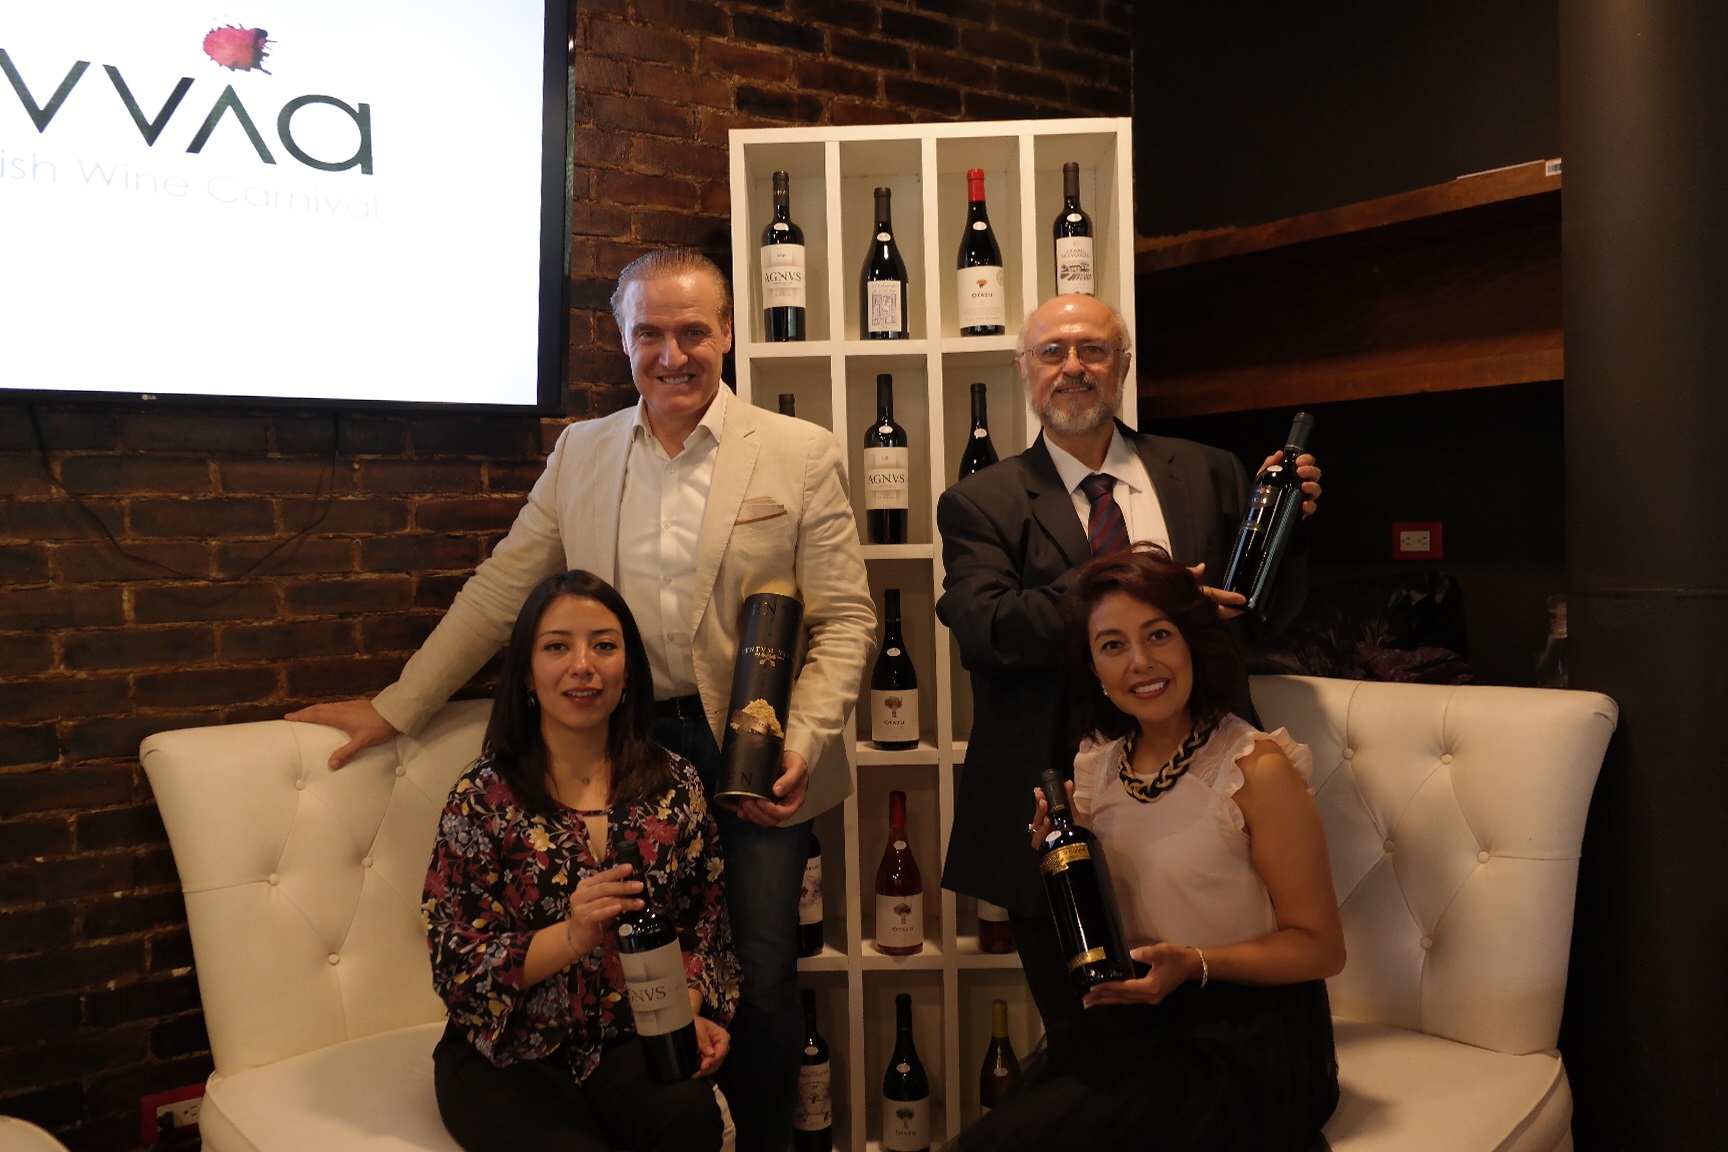 Nace UVVIA, nueva distribuidora de vinos españoles  con denominación de origen en Guatemala